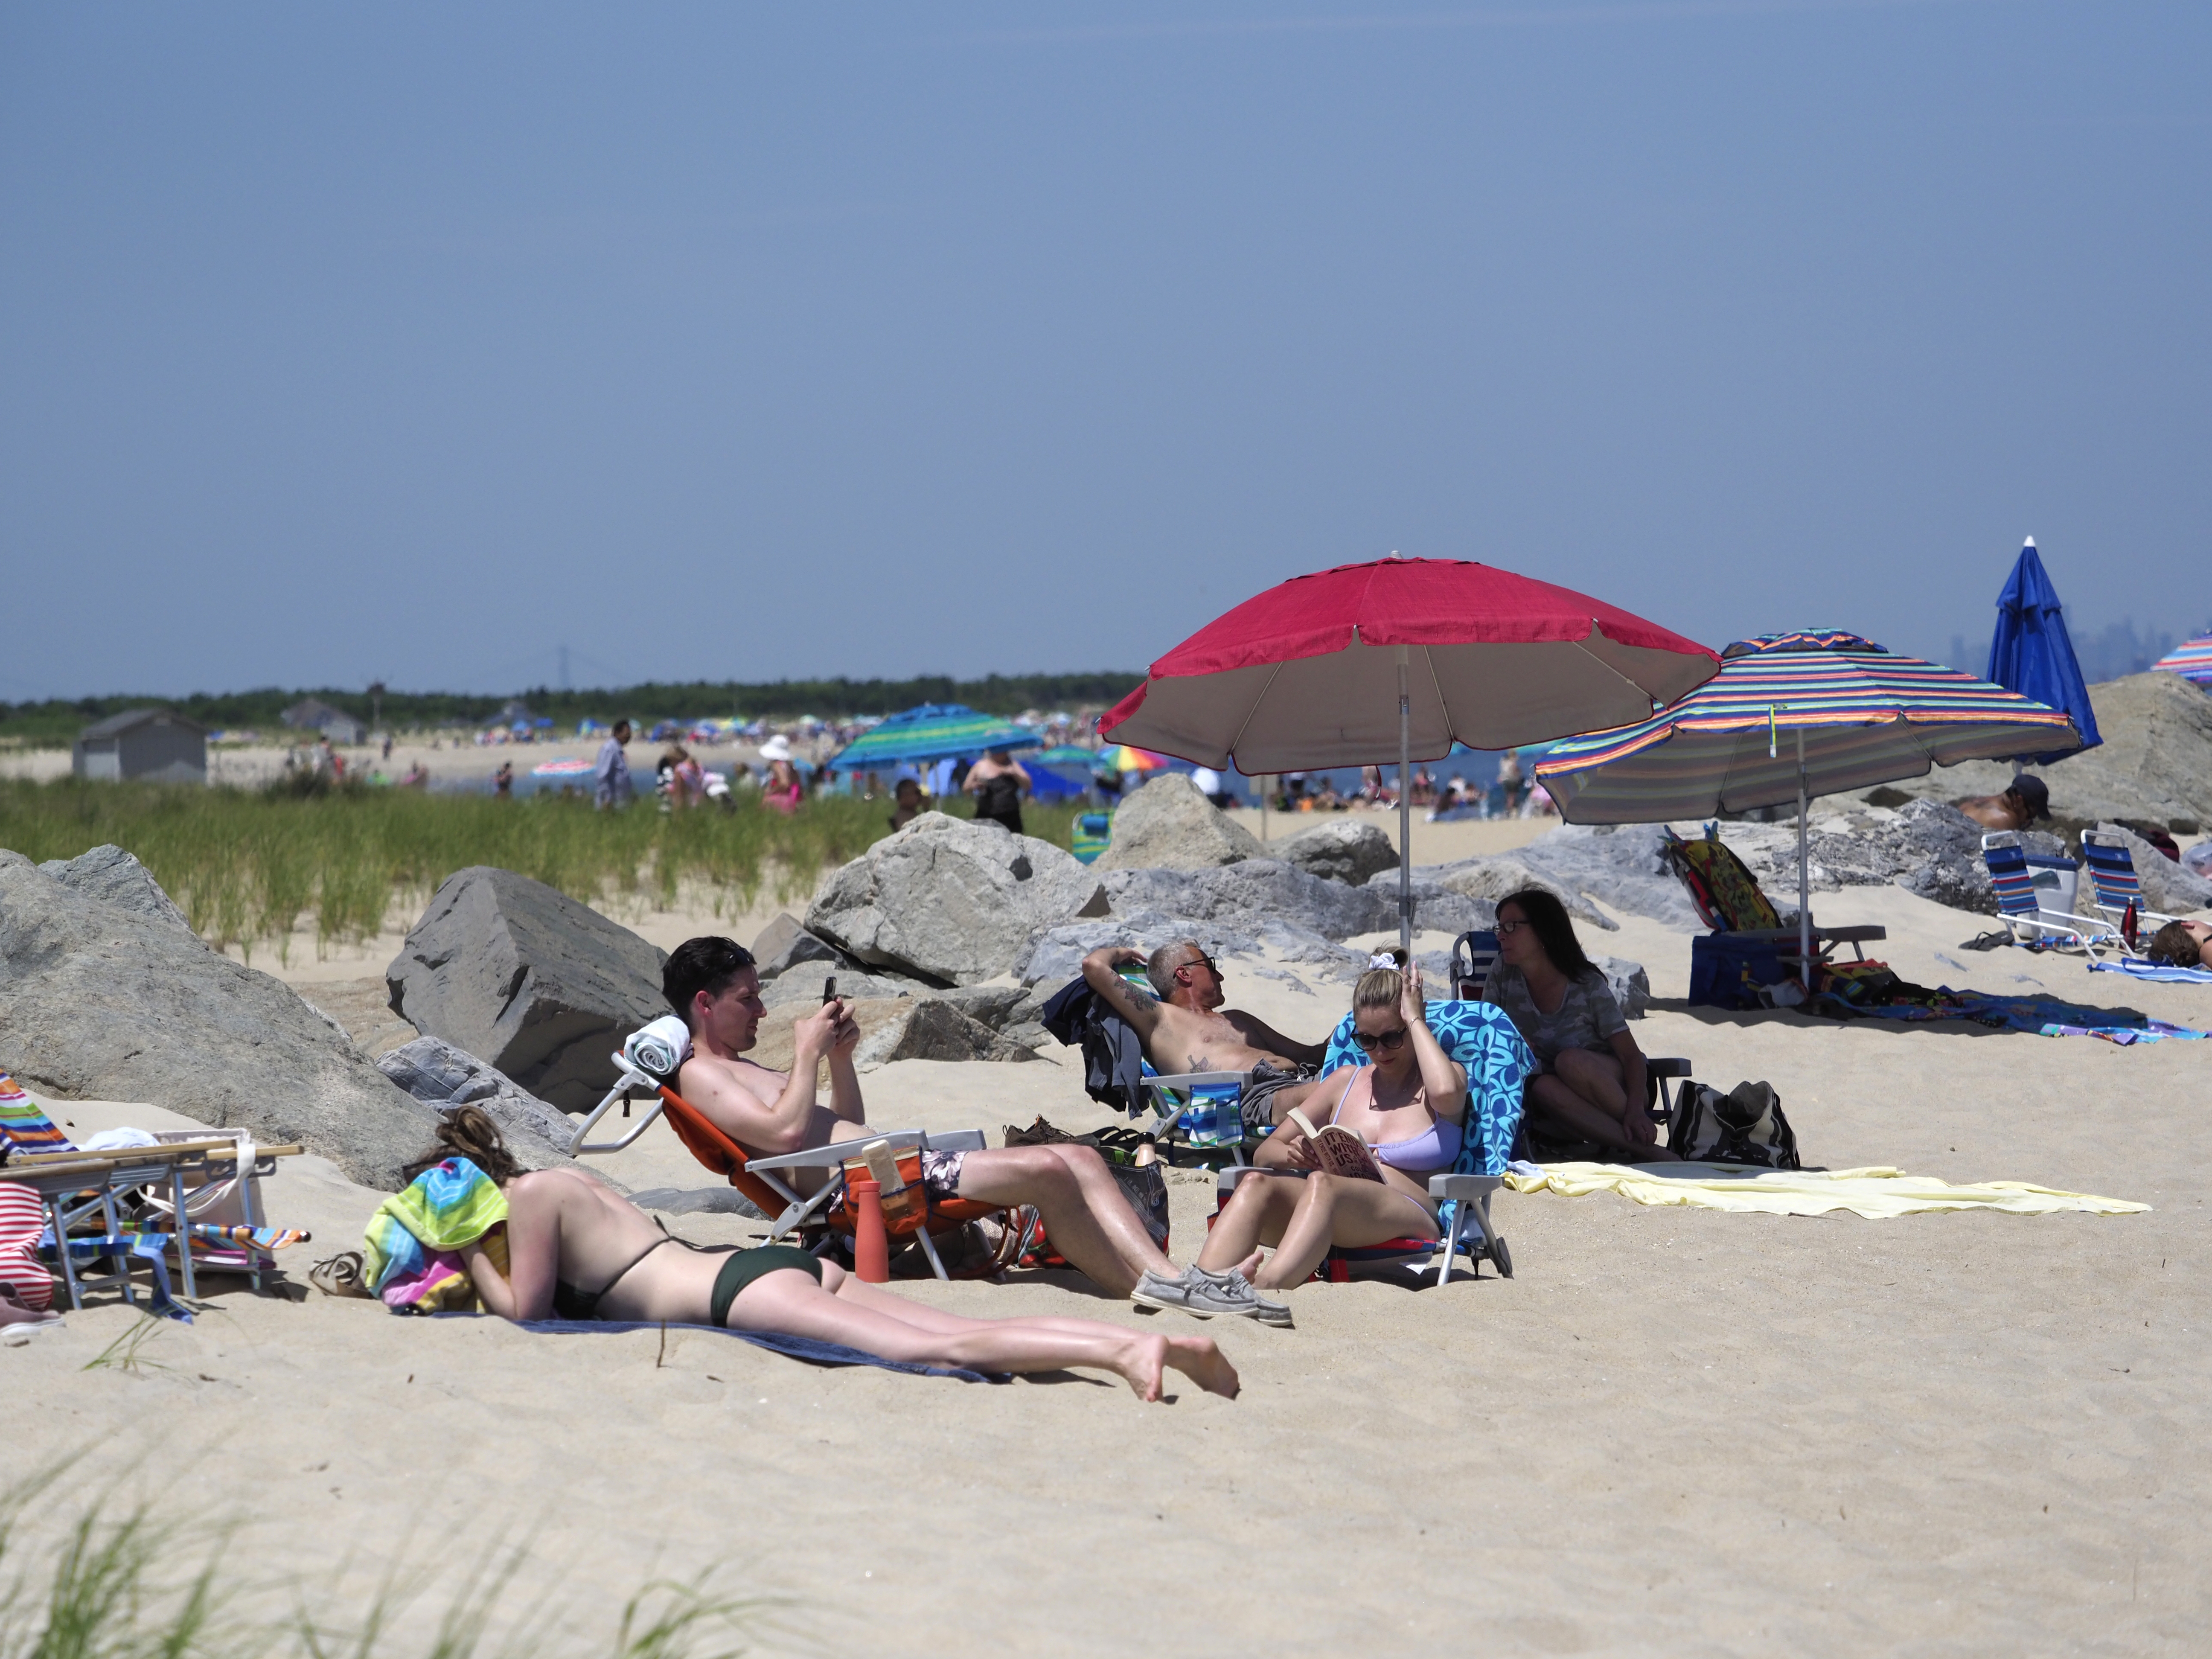 Top nude beach list names New Jersey spot among best worldwide image